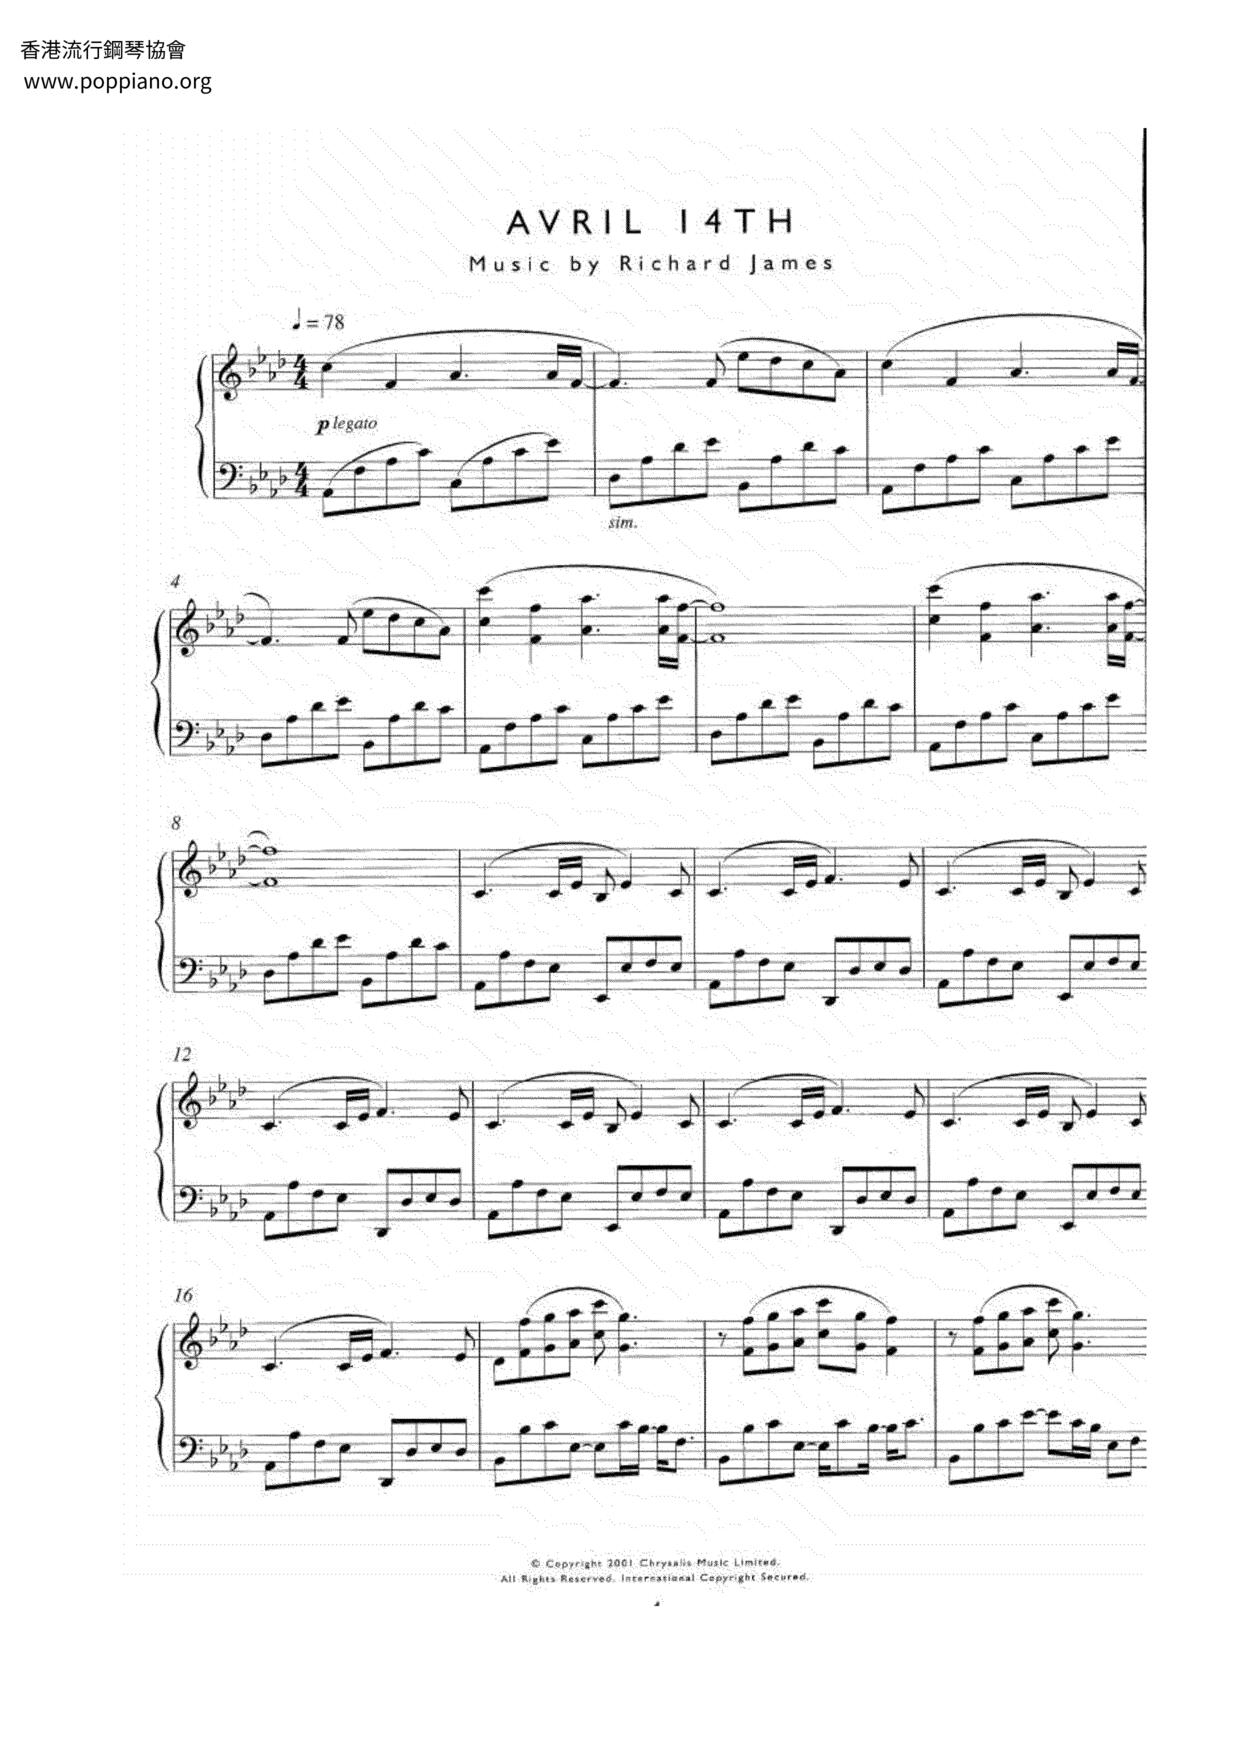 Avril 14thピアノ譜